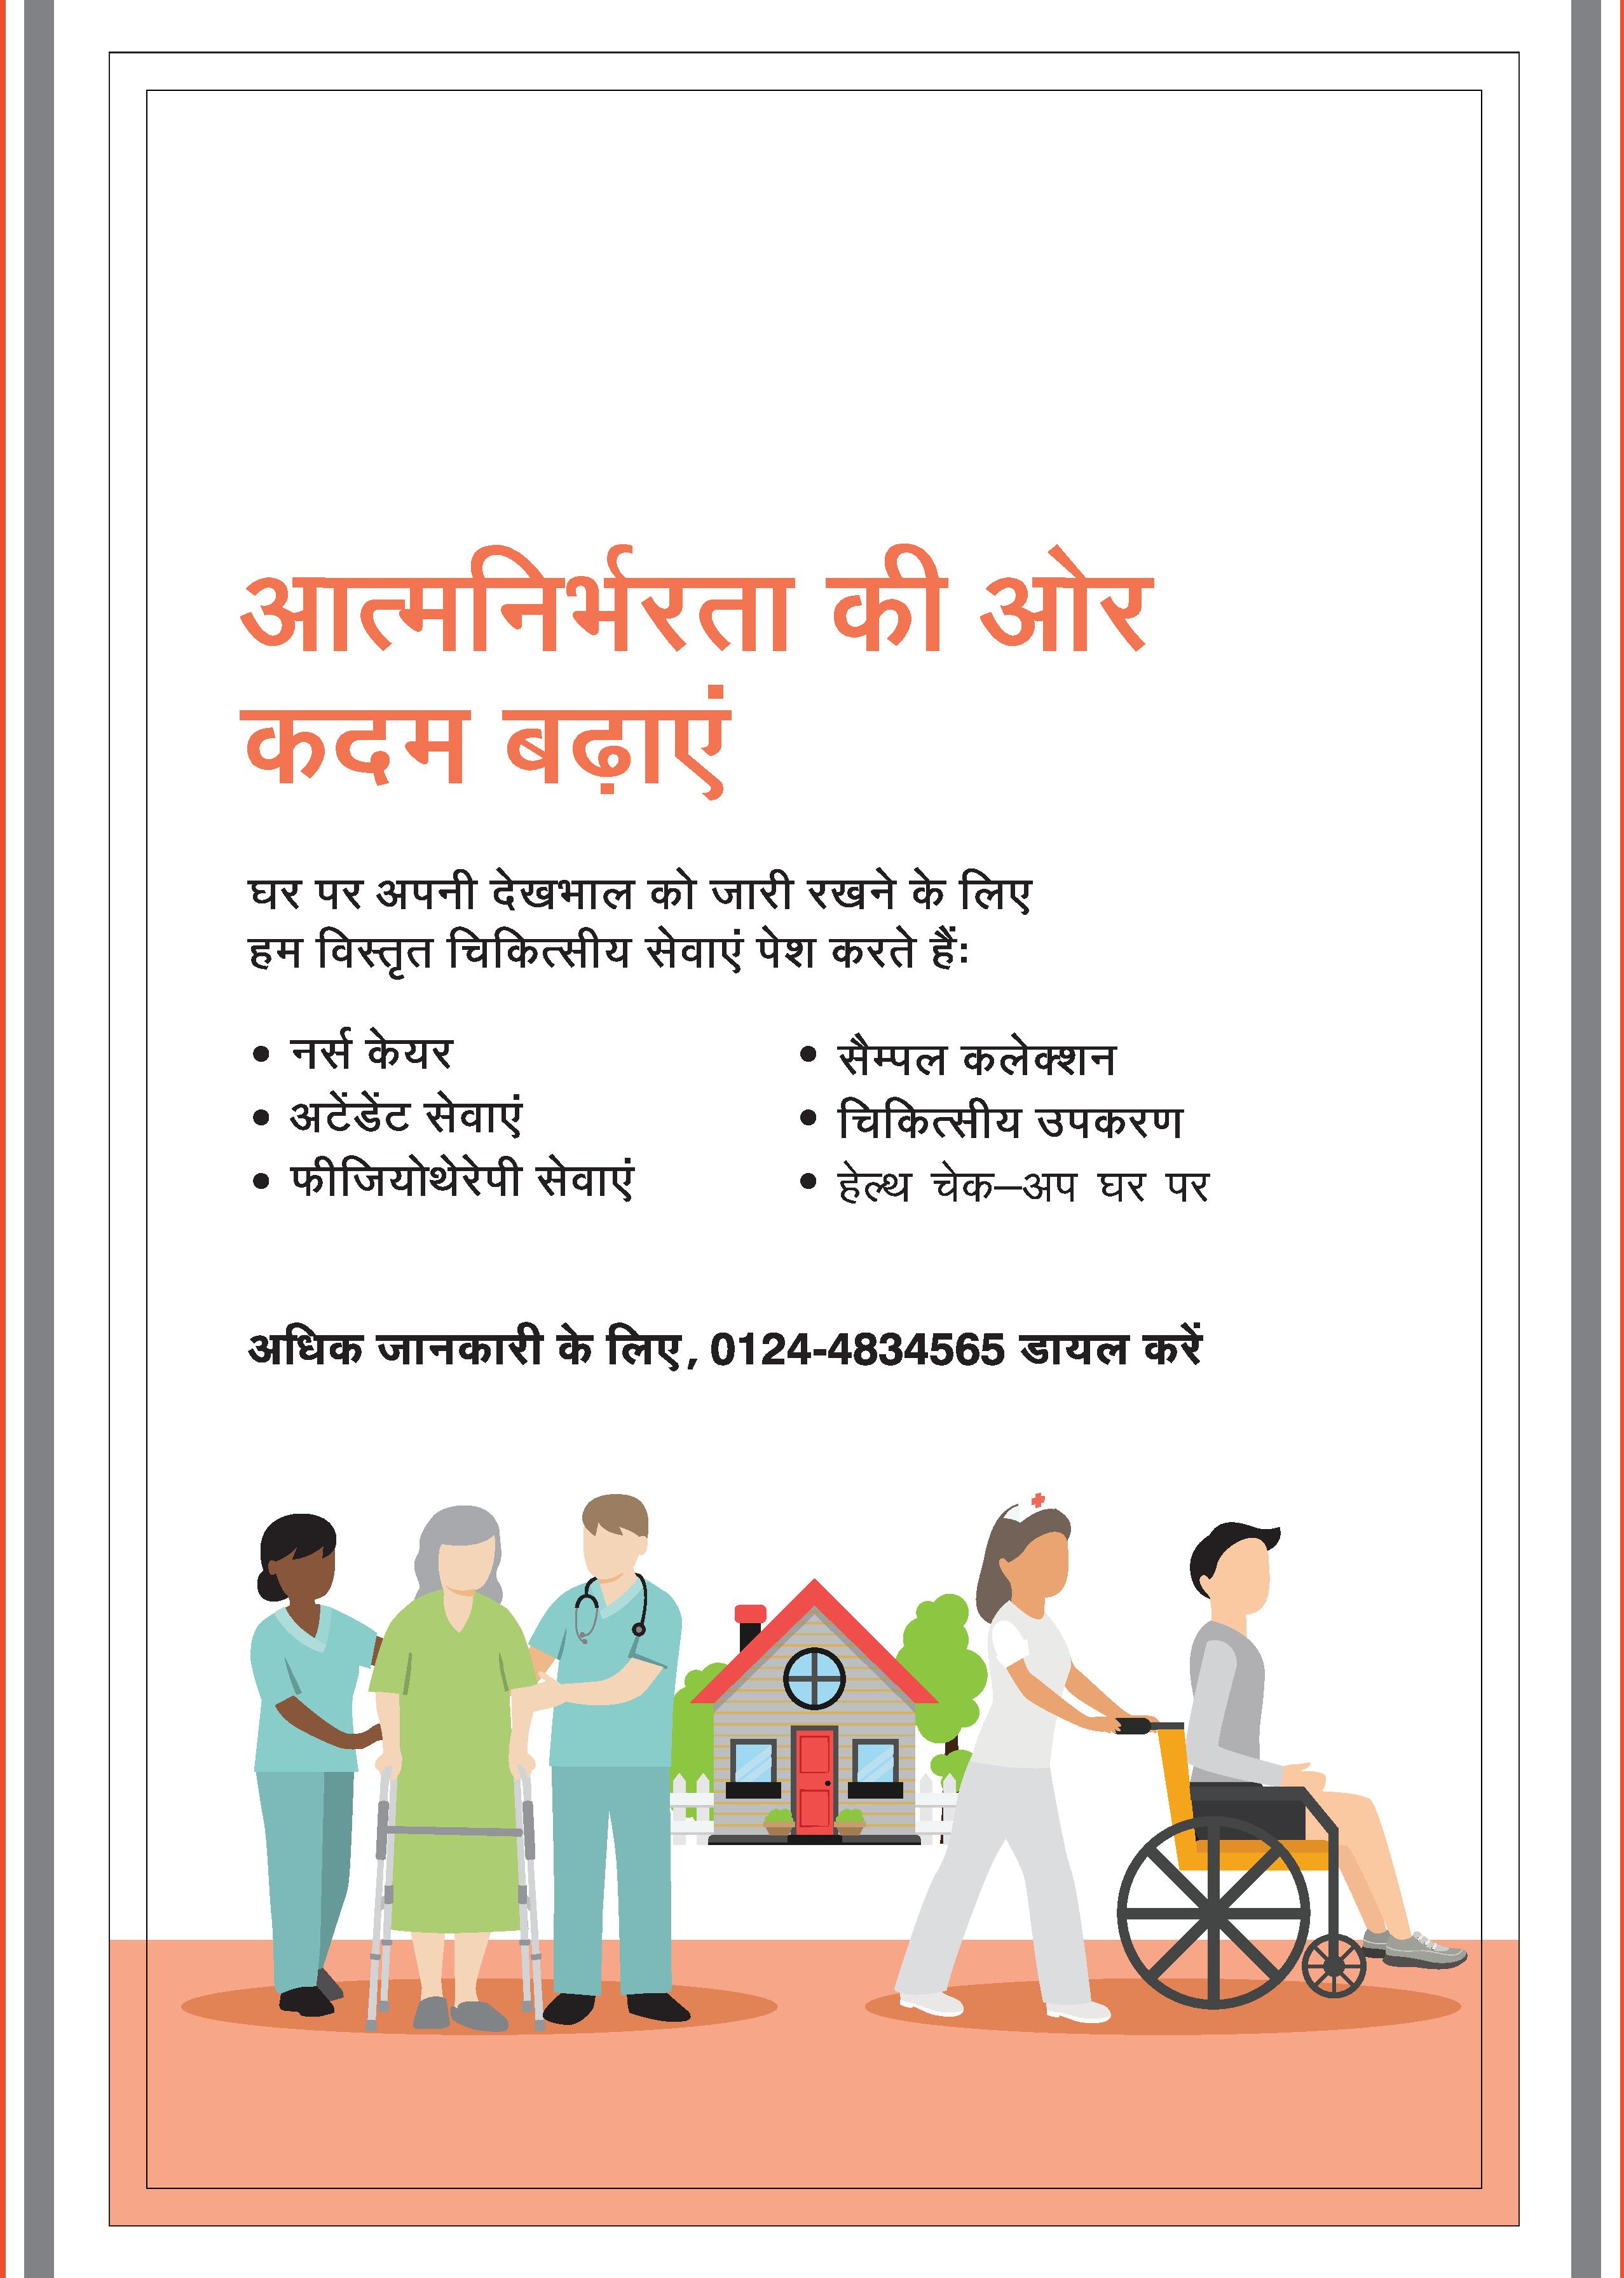 medical education in hindi